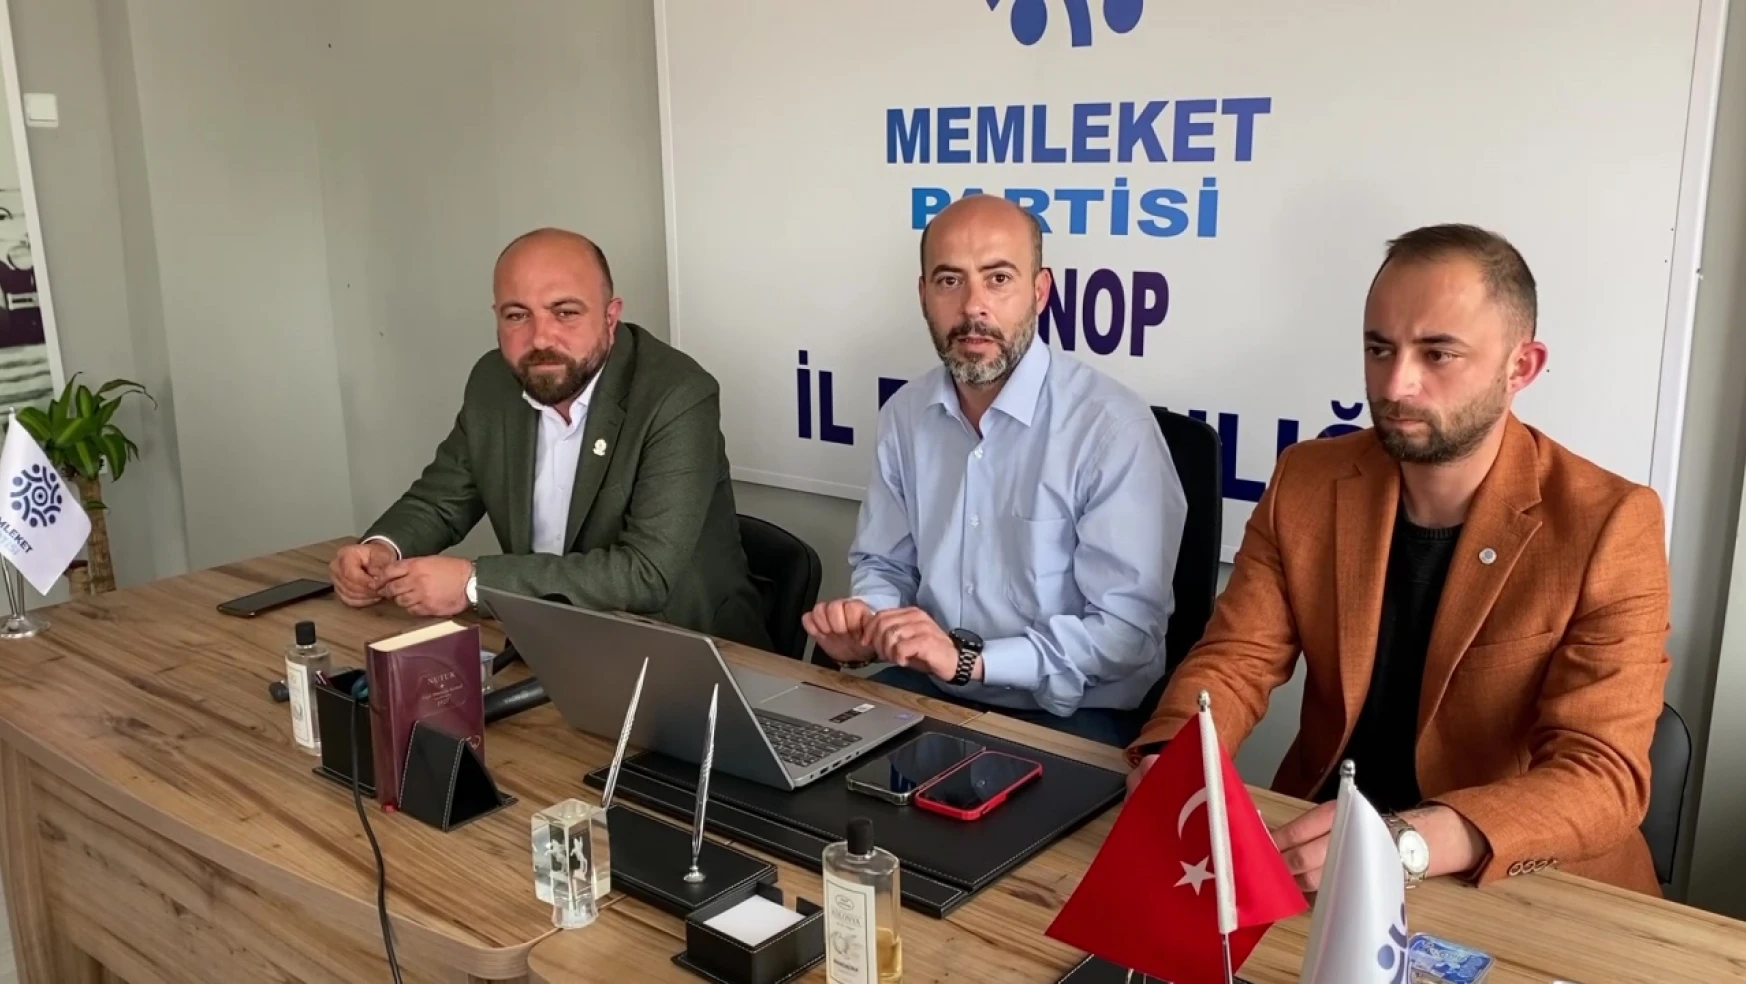 Memleket Partisi Sinop İl Başkanlığından açıklama